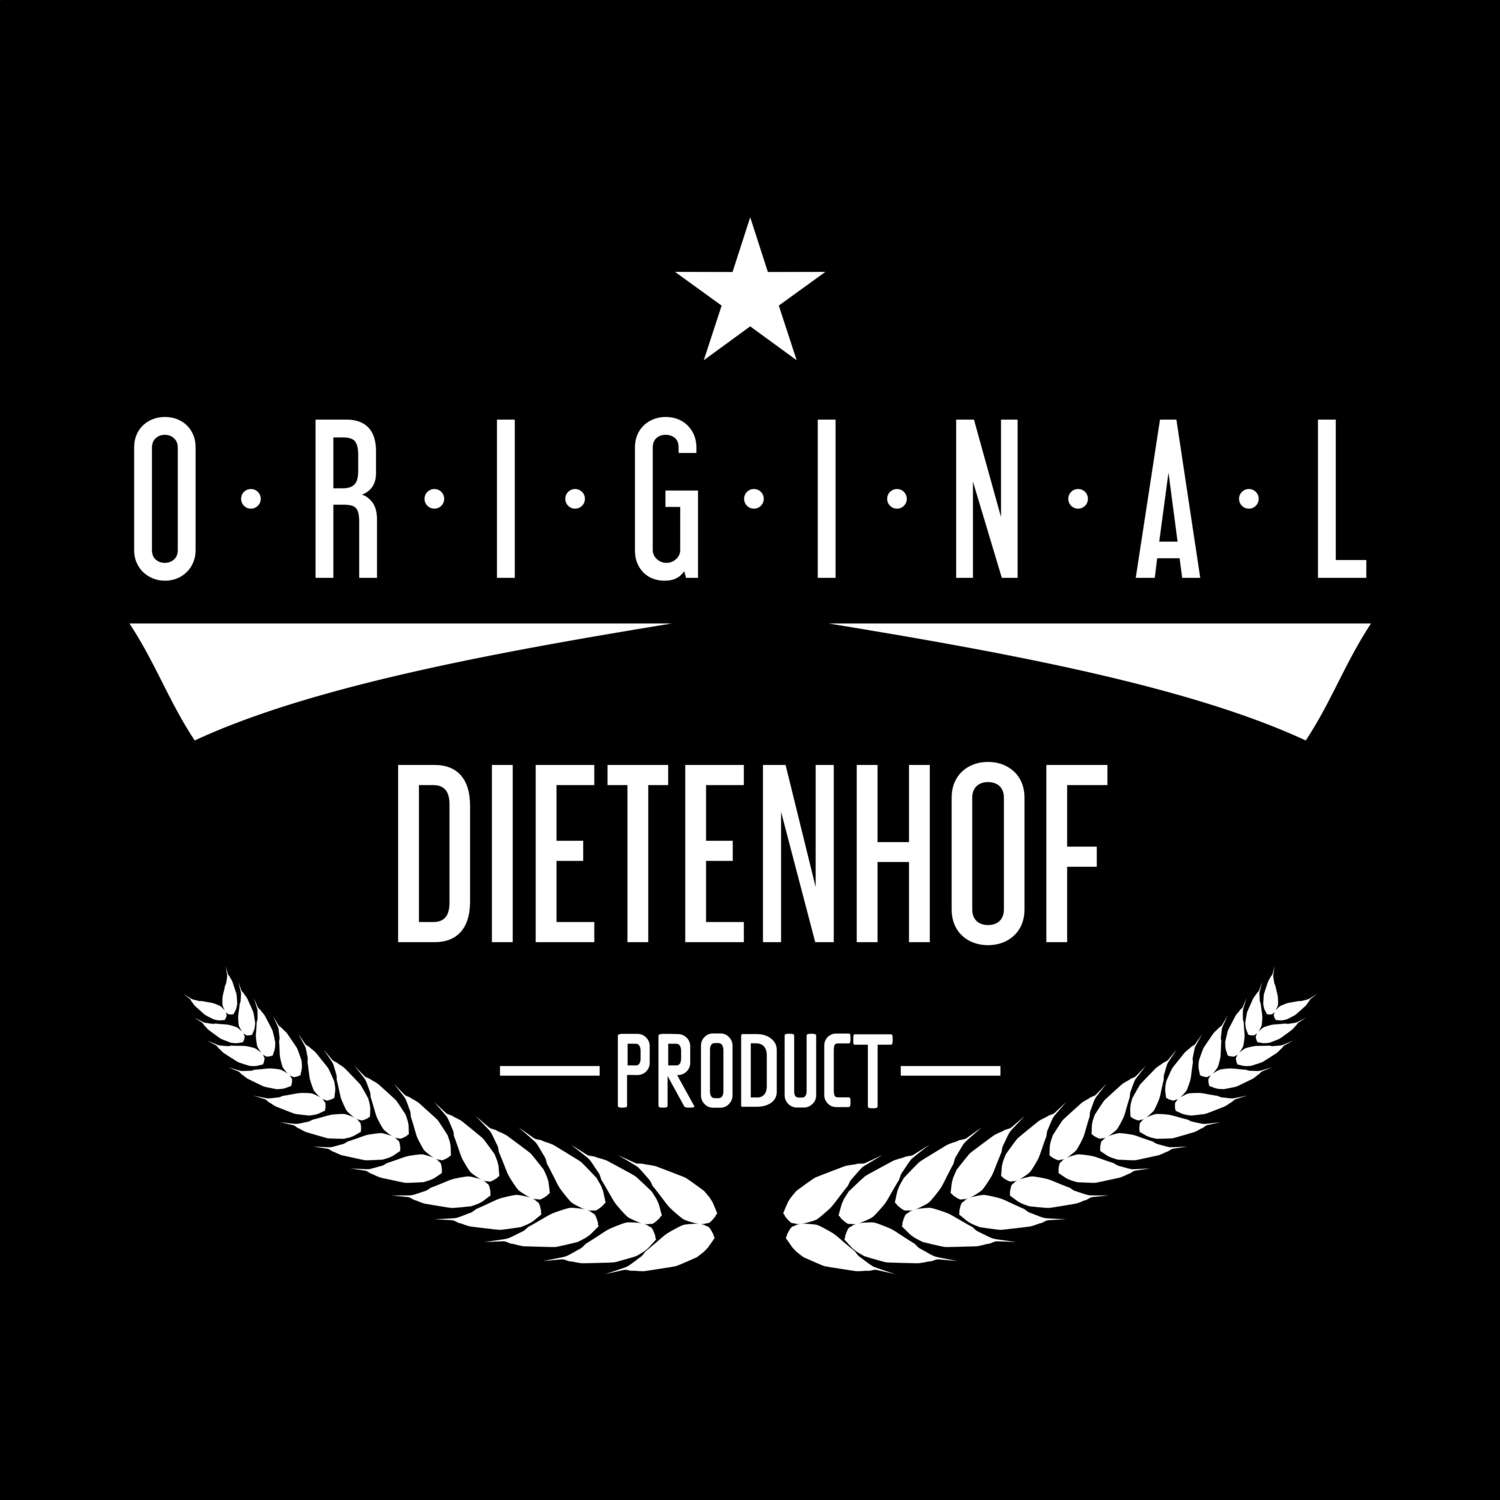 Dietenhof T-Shirt »Original Product«